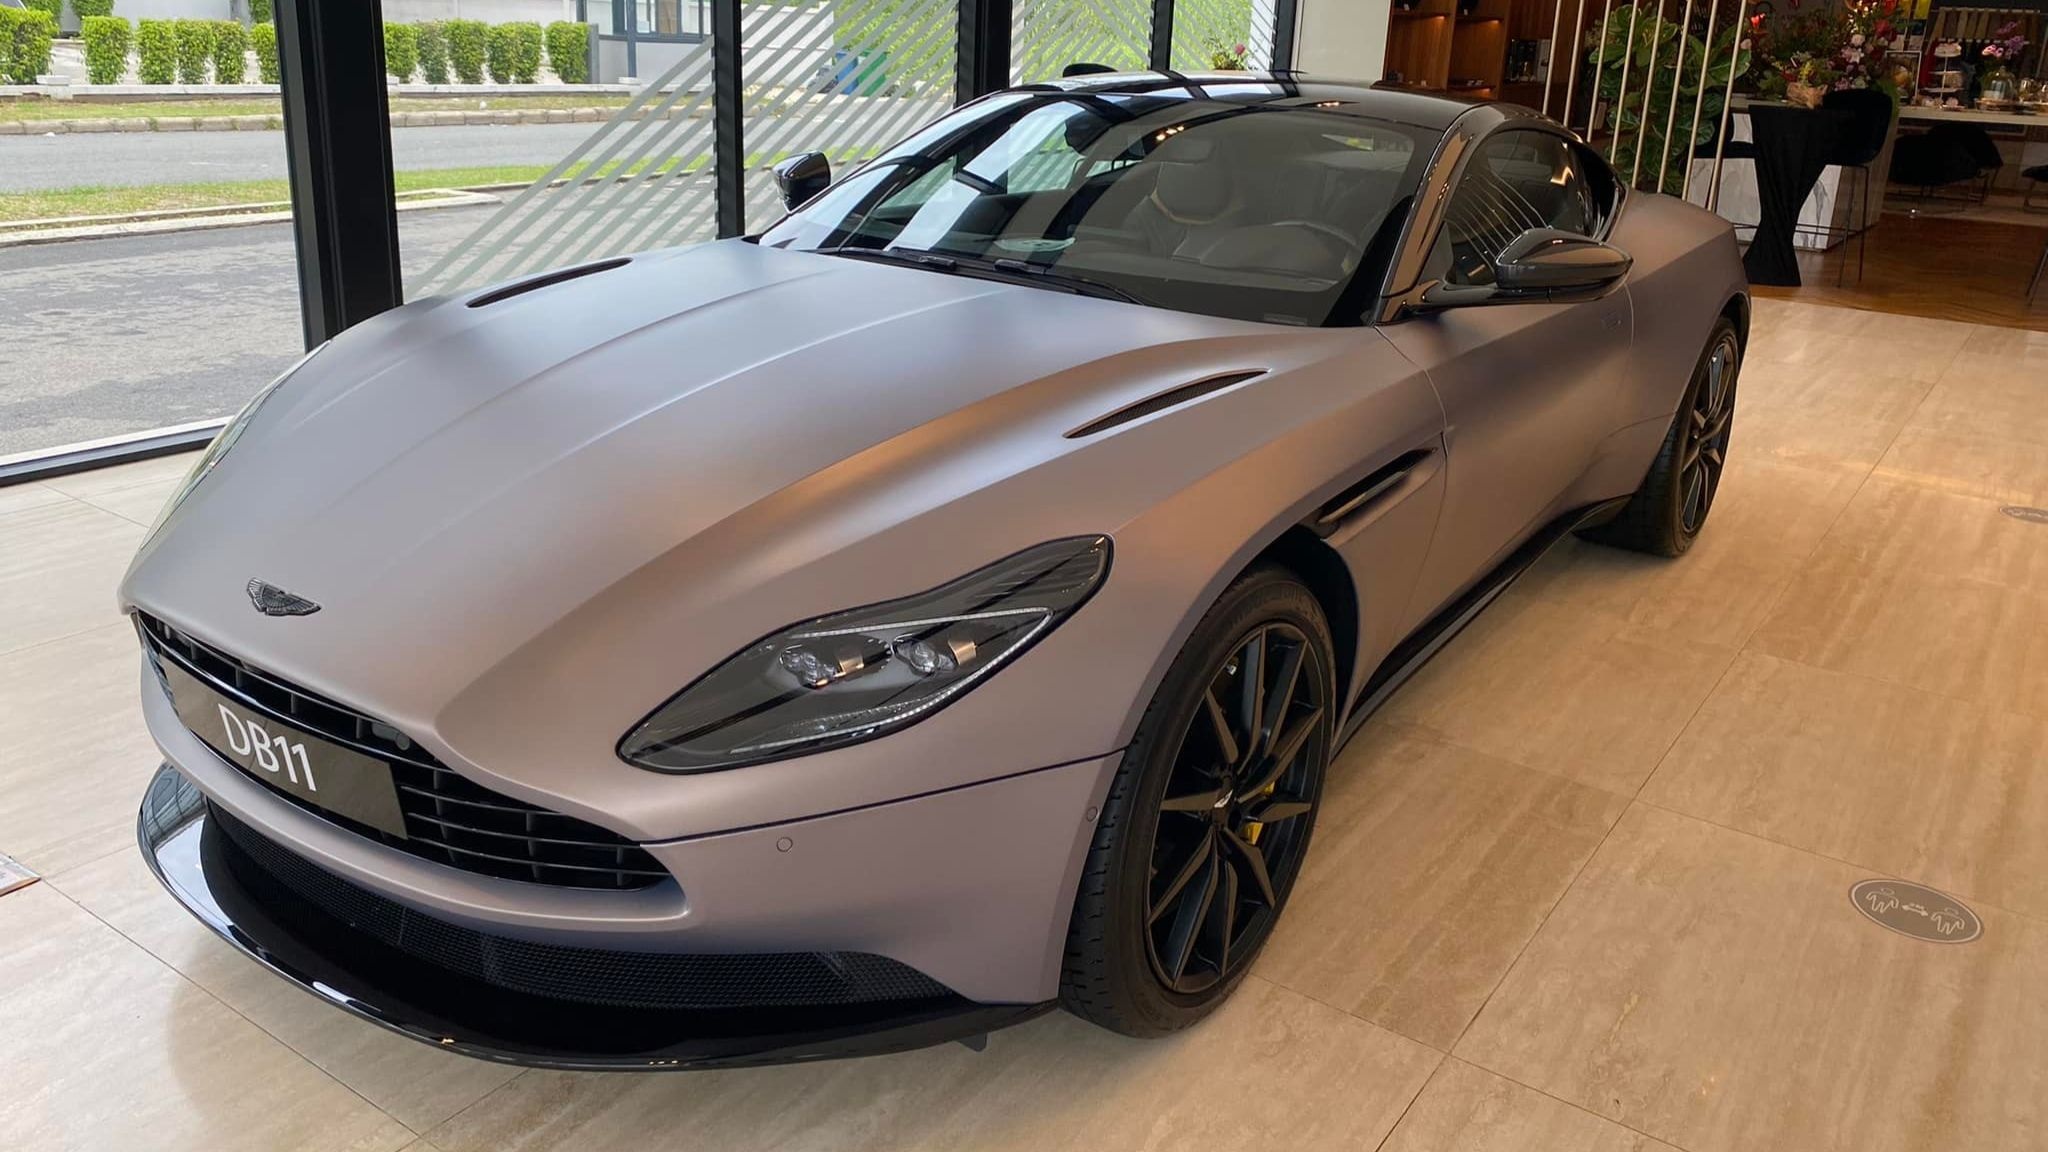 Bộ đôi siêu xe Aston Martin giá gần 40 tỉ đồng về Việt Nam - ảnh 3